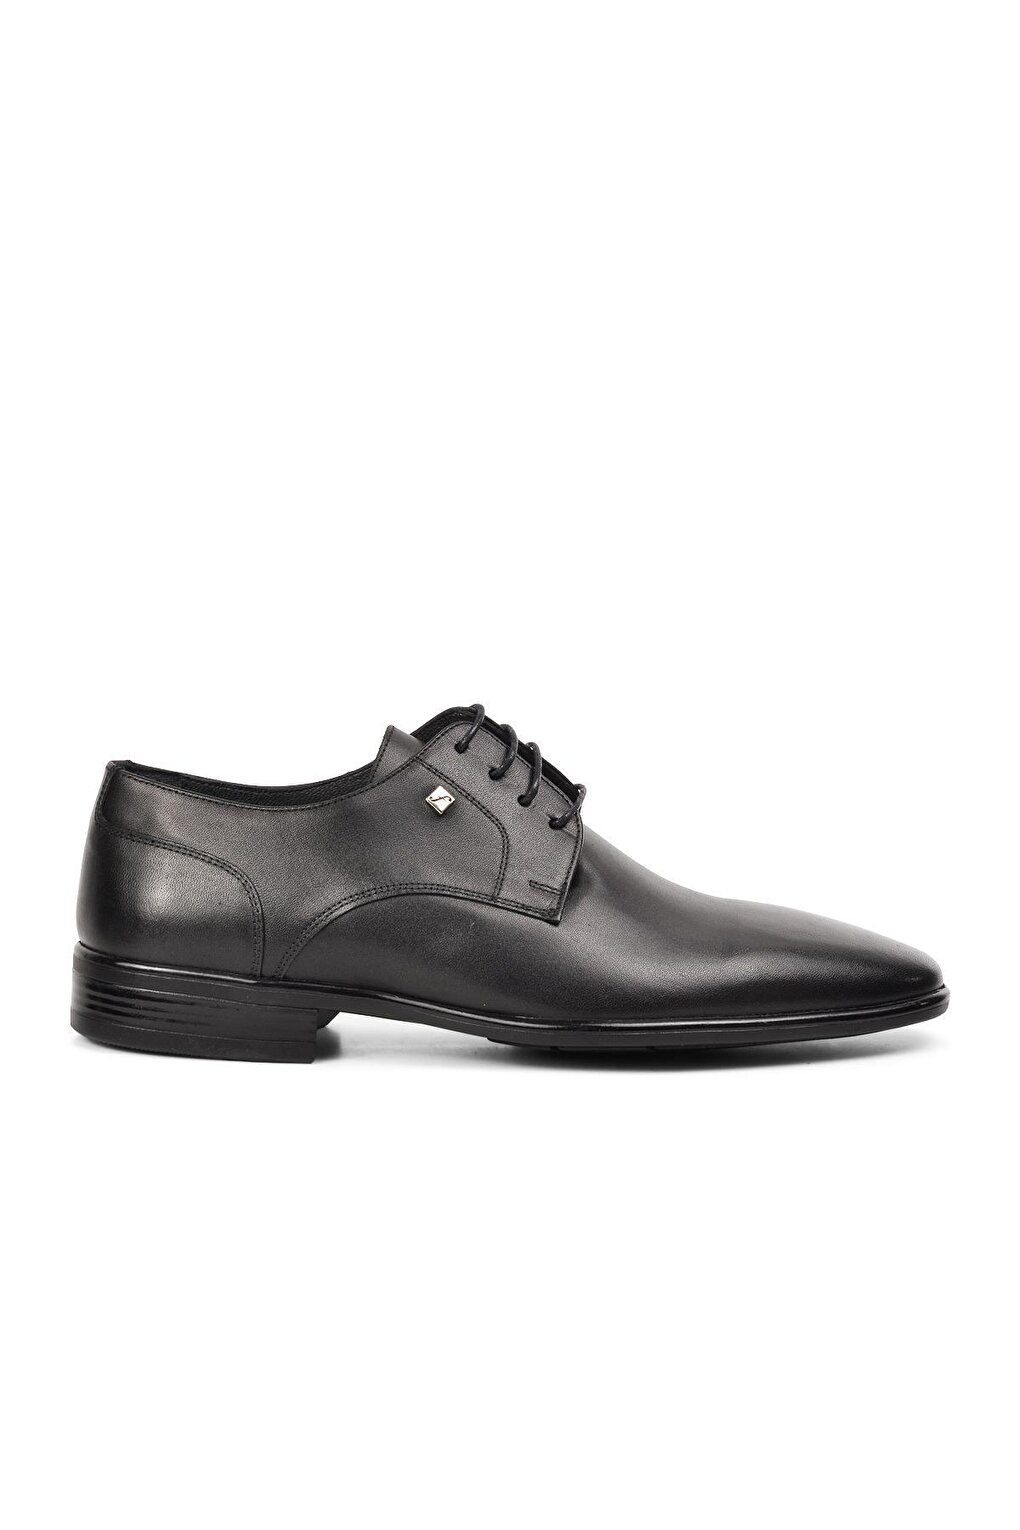 Черные мужские классические туфли из натуральной кожи на шнуровке 2806 Fosco мужские классические туфли из натуральной кожи оксфорды свадебные туфли круглый носок на шнуровке для бизнеса работы черные белые